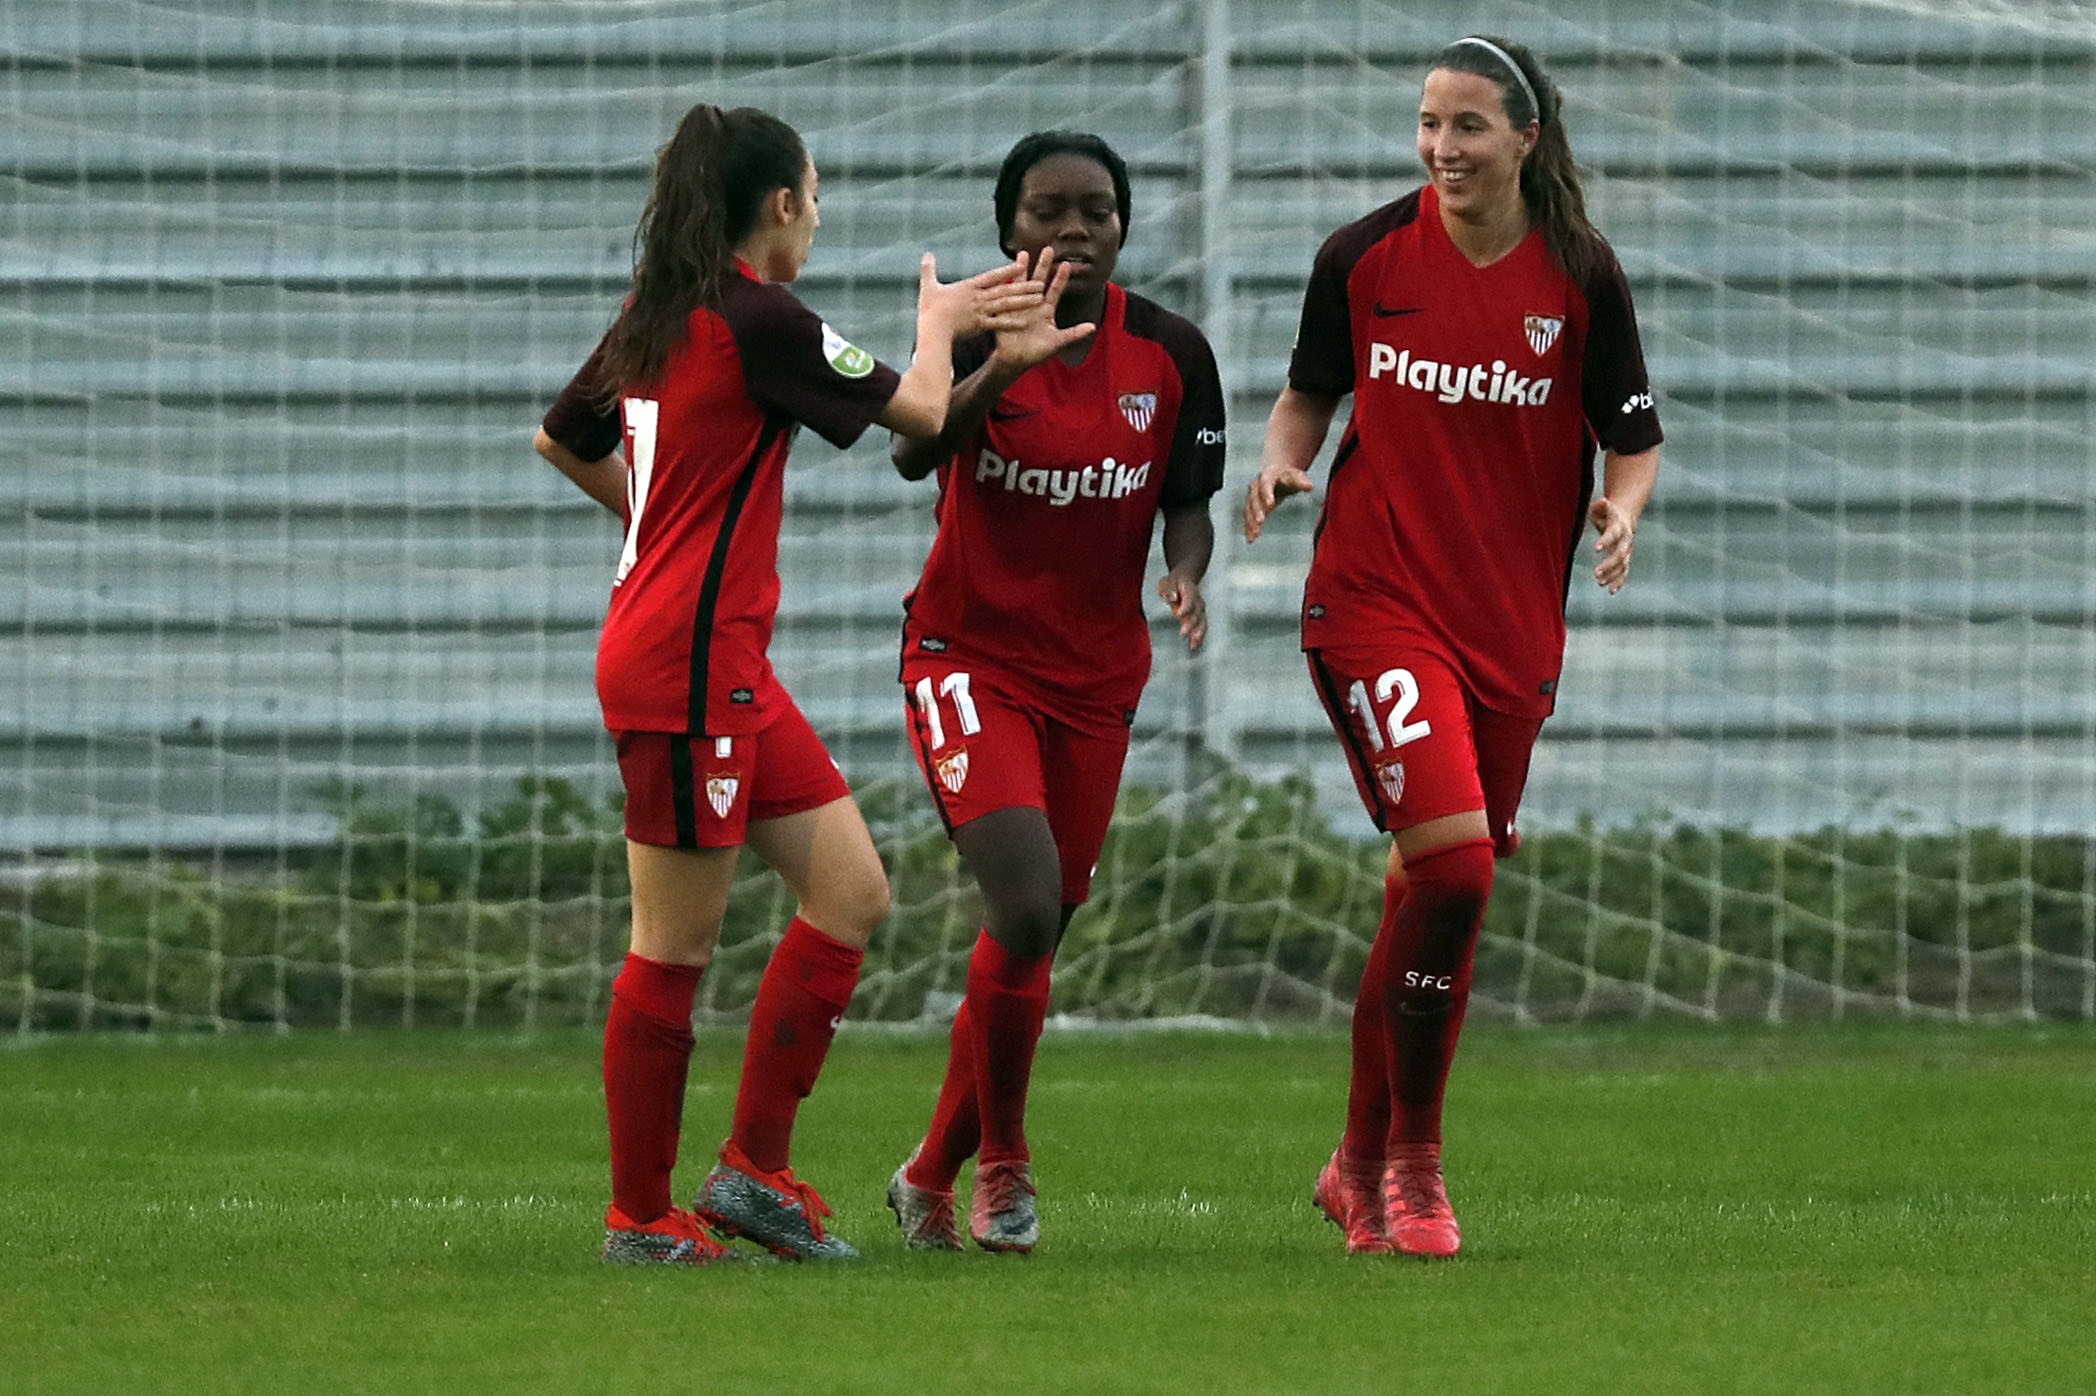 Olga Carmona y Jeni Morilla felicitan a Toni Payne tras el gol conseguido en Málaga la pasada semana para el primer equipo femenino del Sevilla FC